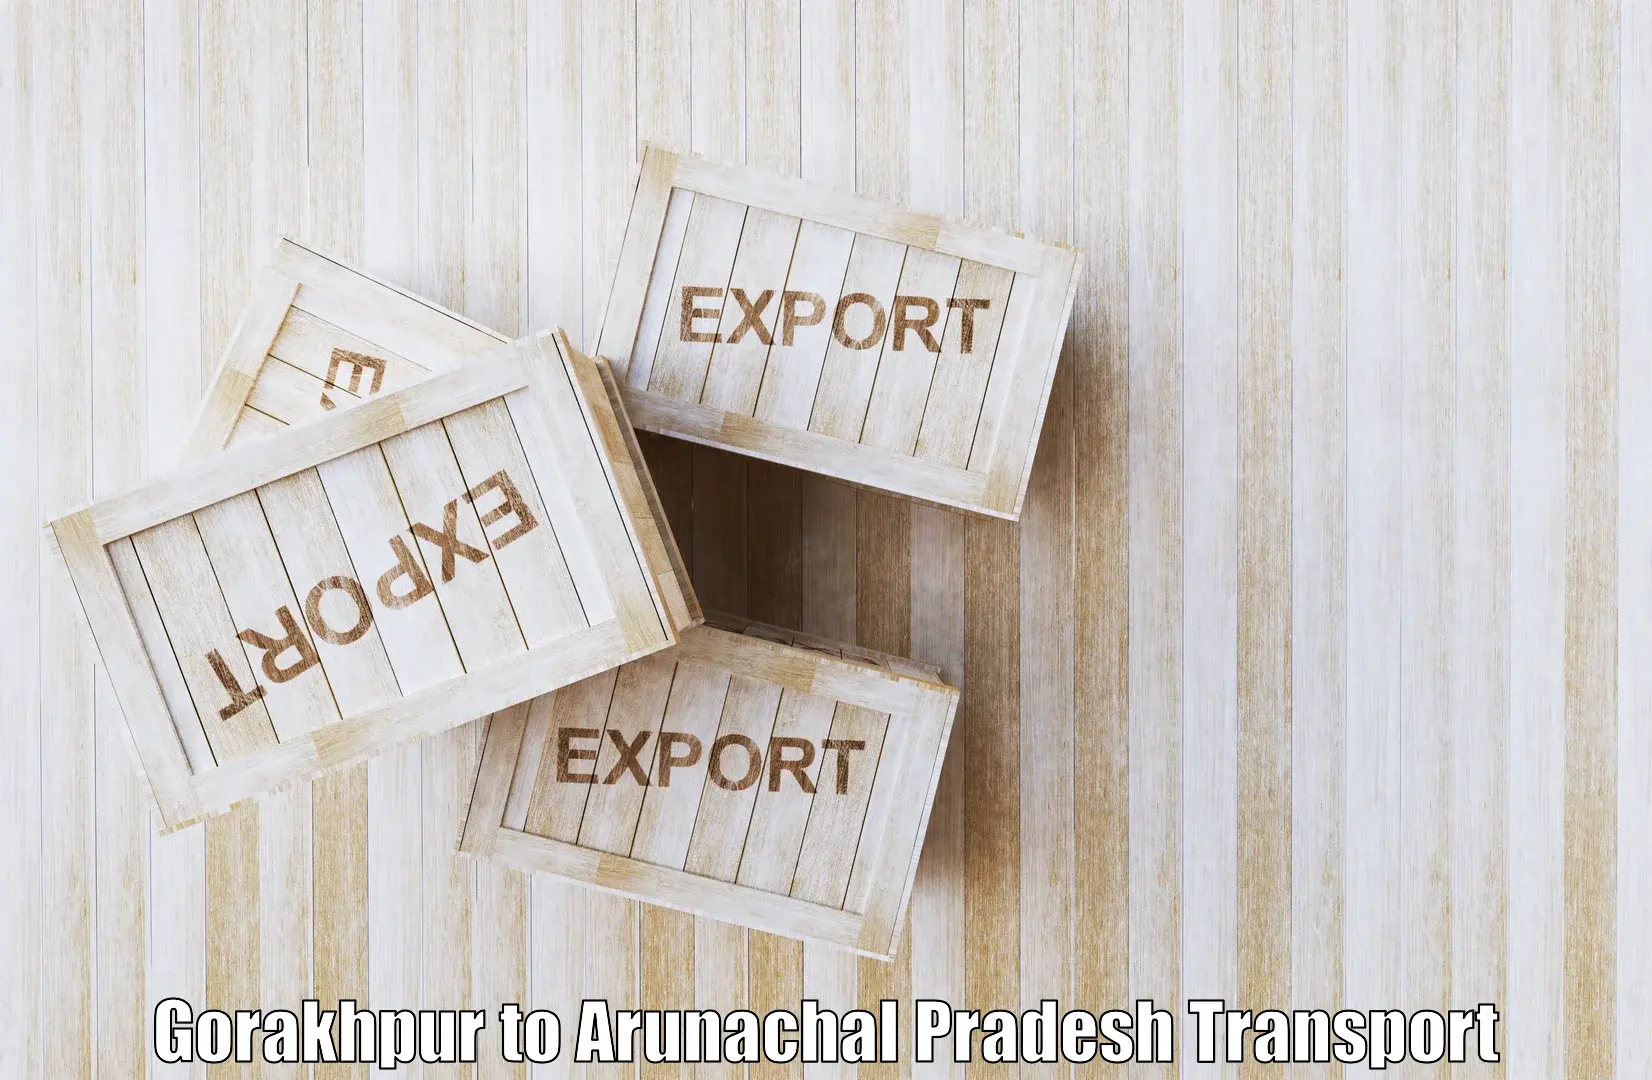 Transport services in Gorakhpur to Arunachal Pradesh